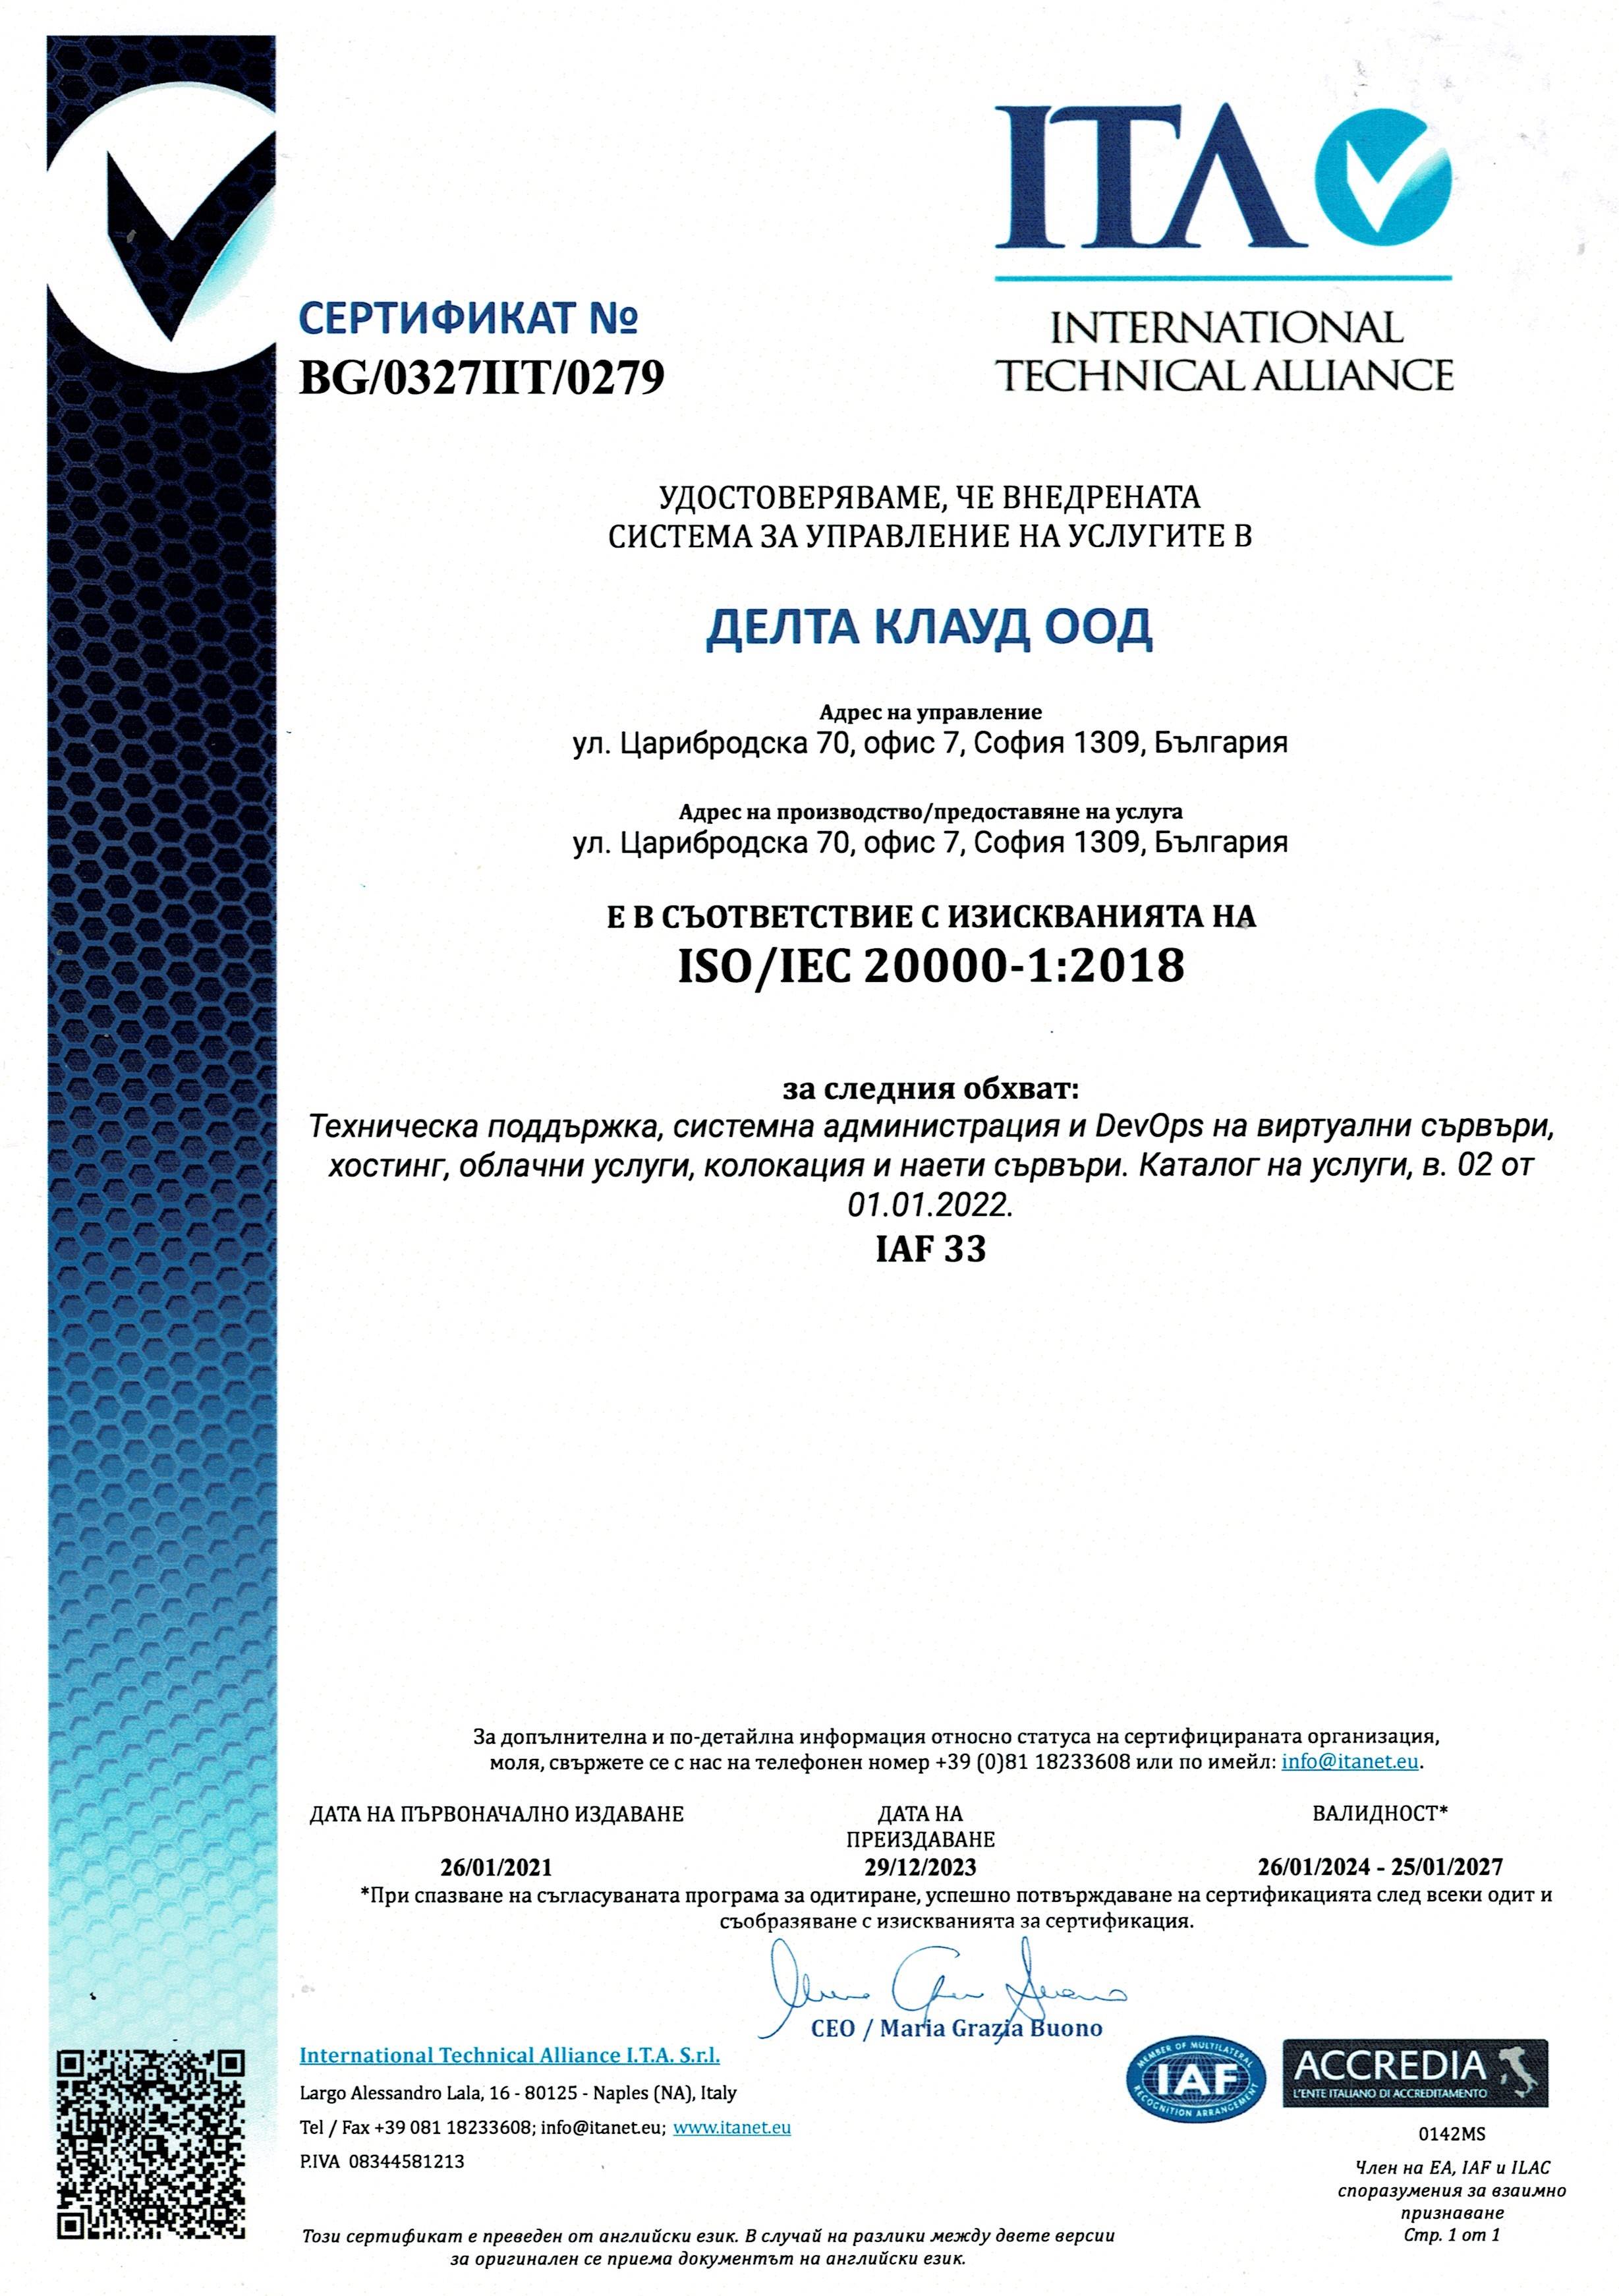 Гаранция за ниво на ИТ услугата - ISO/IEC 20000-1:2018